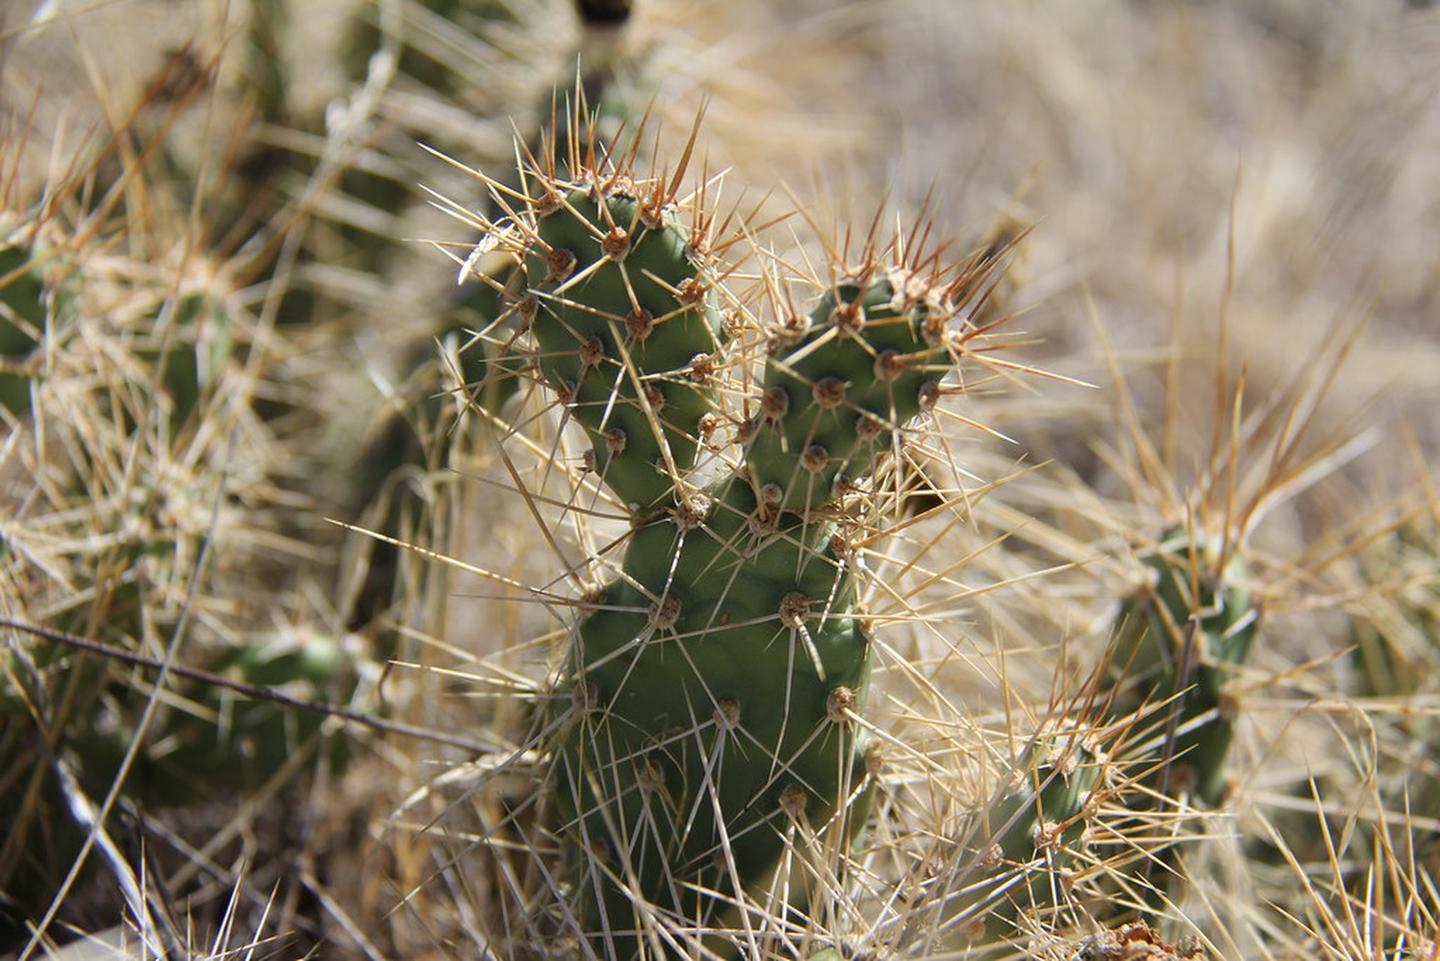 Cactus in the Juniper Dunes WIldernessCactus in the Juniper Dunes Wilderness
